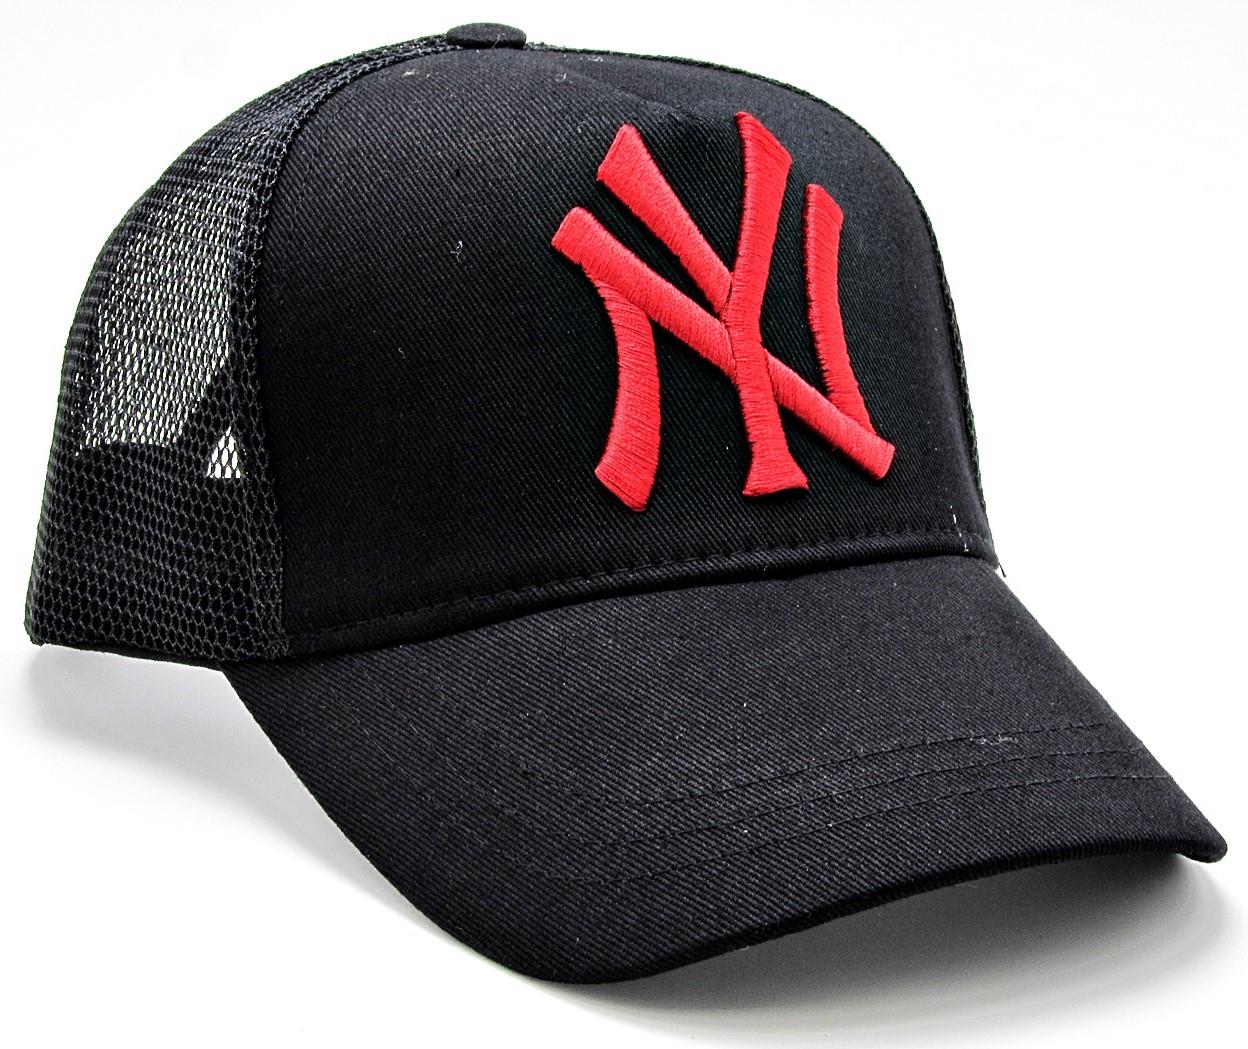 NY Cap Yazlık Fileli Unisex Şapka cp222 - Siyah Kırmızı Yazılı